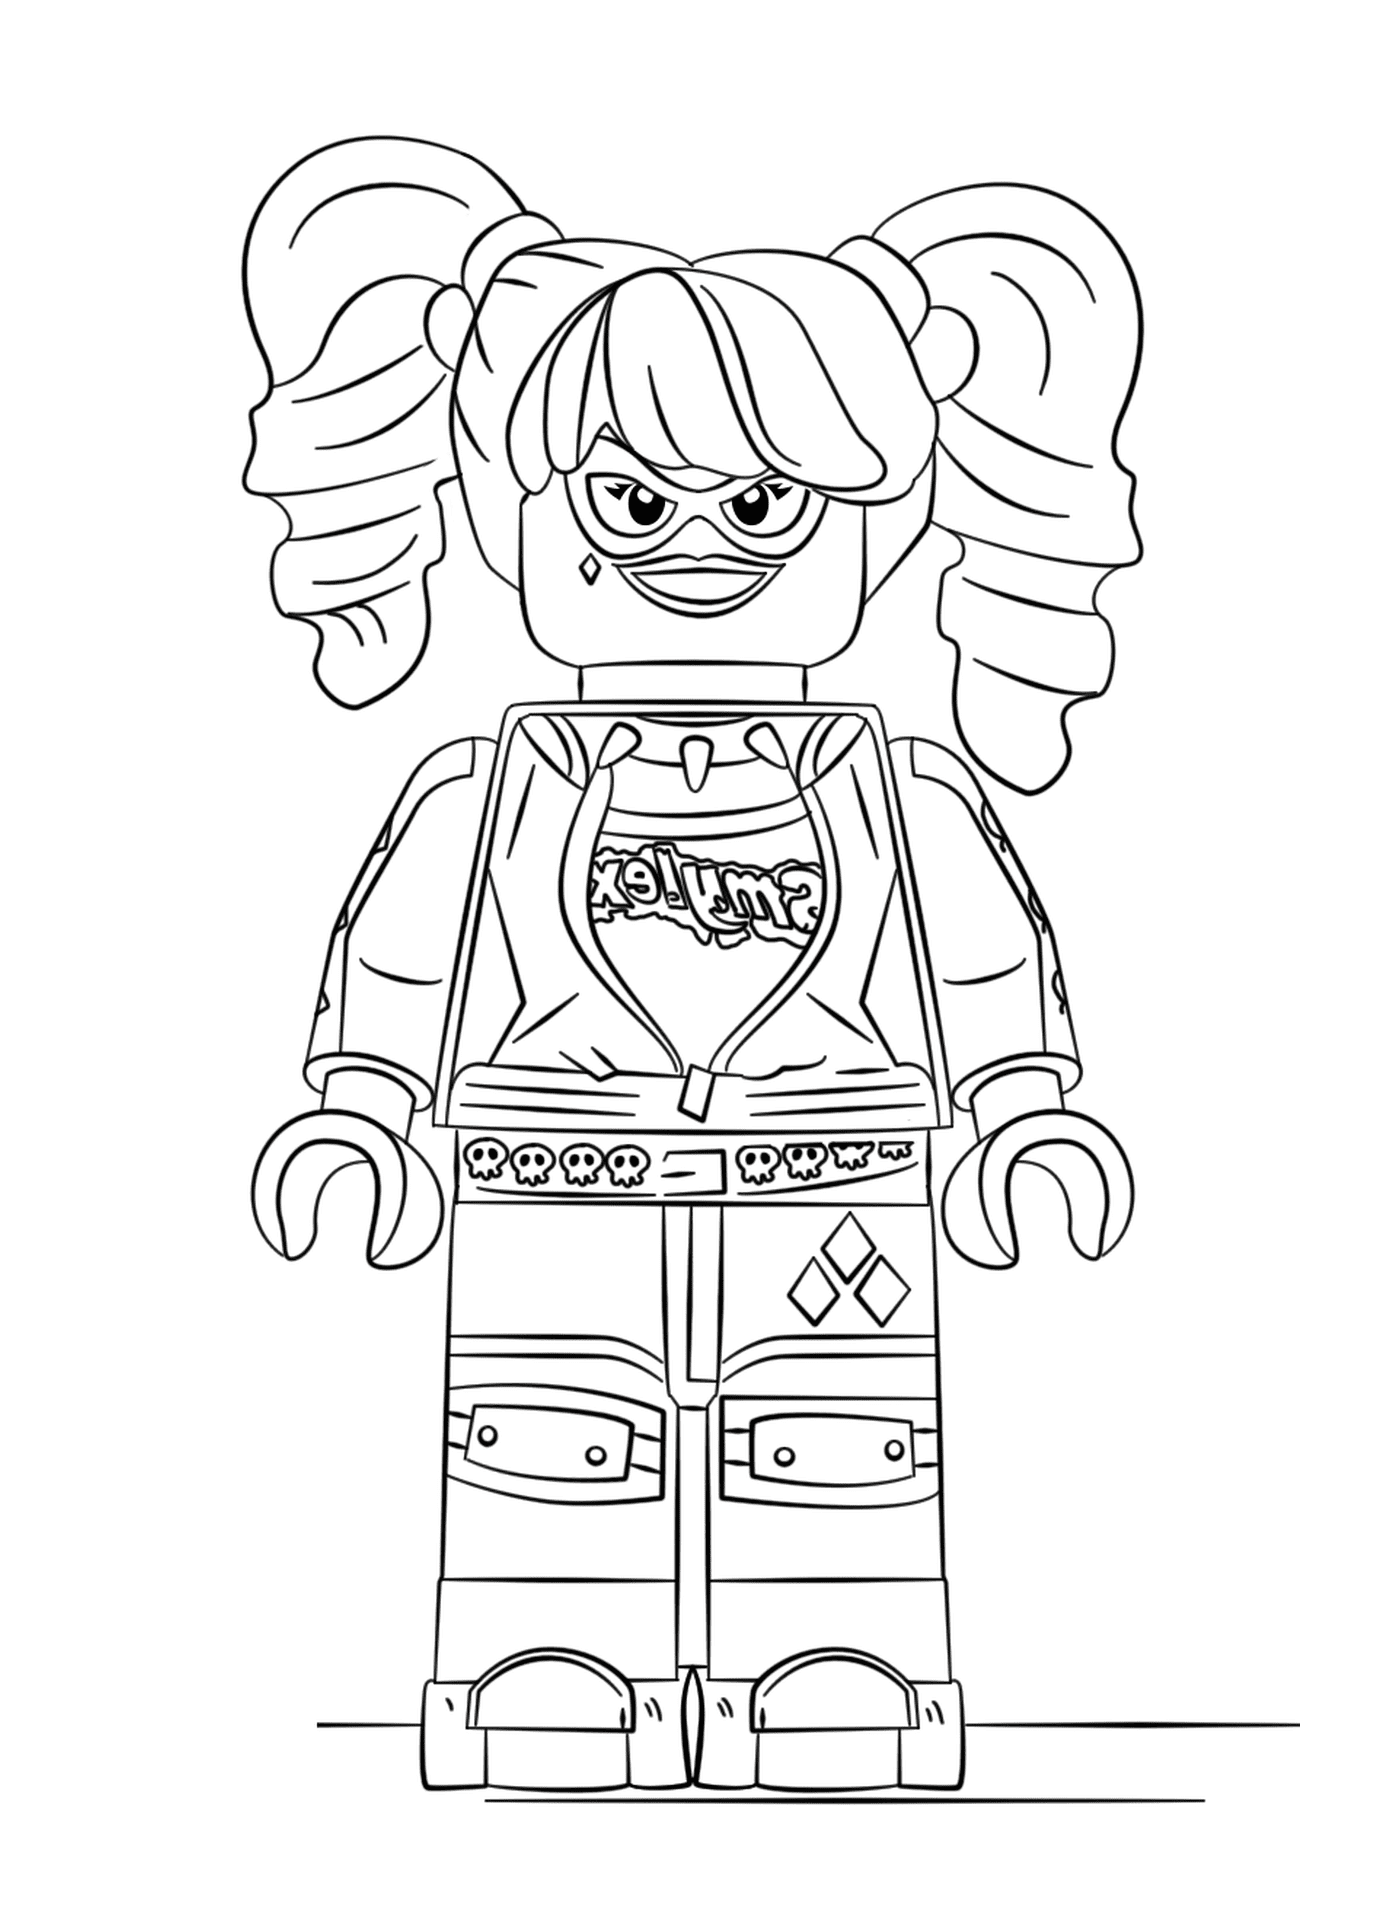  Lego chica con una sonrisa en la cara 